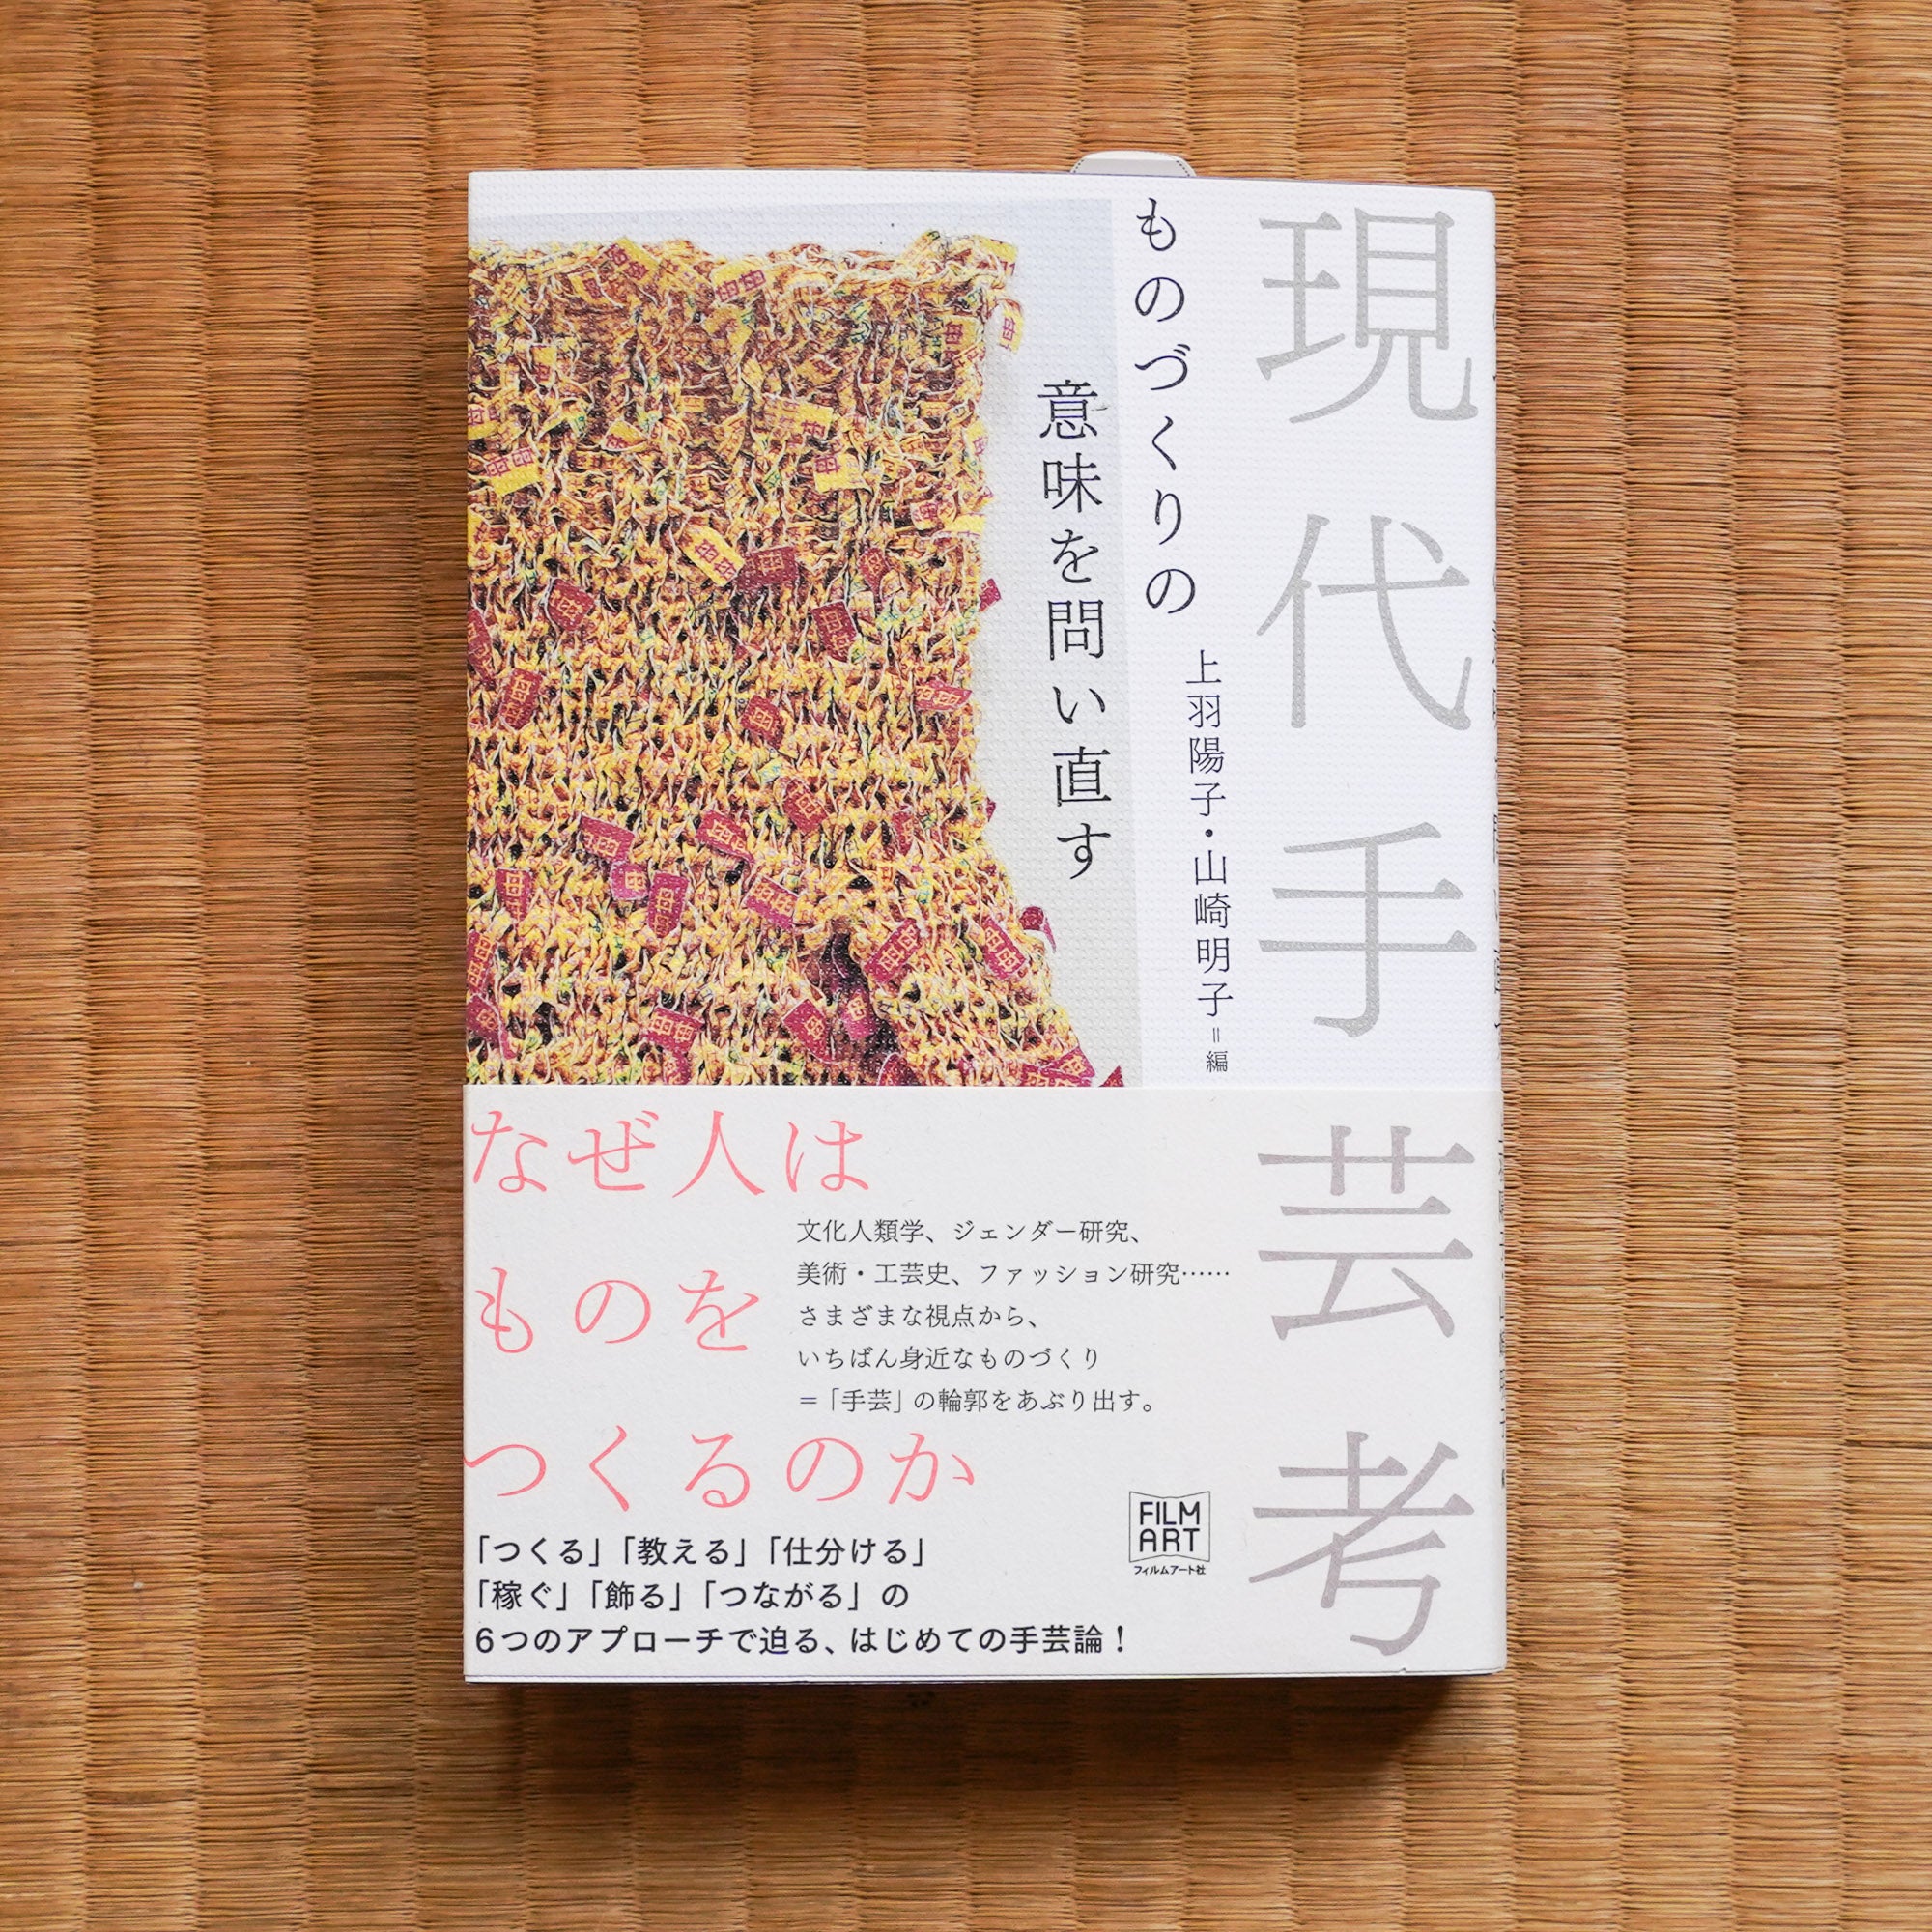 現代手芸考：ものづくりの意味を問い直す – Yoko Ueba  Akiko Yamasaki – Art Island Center  アート島センター